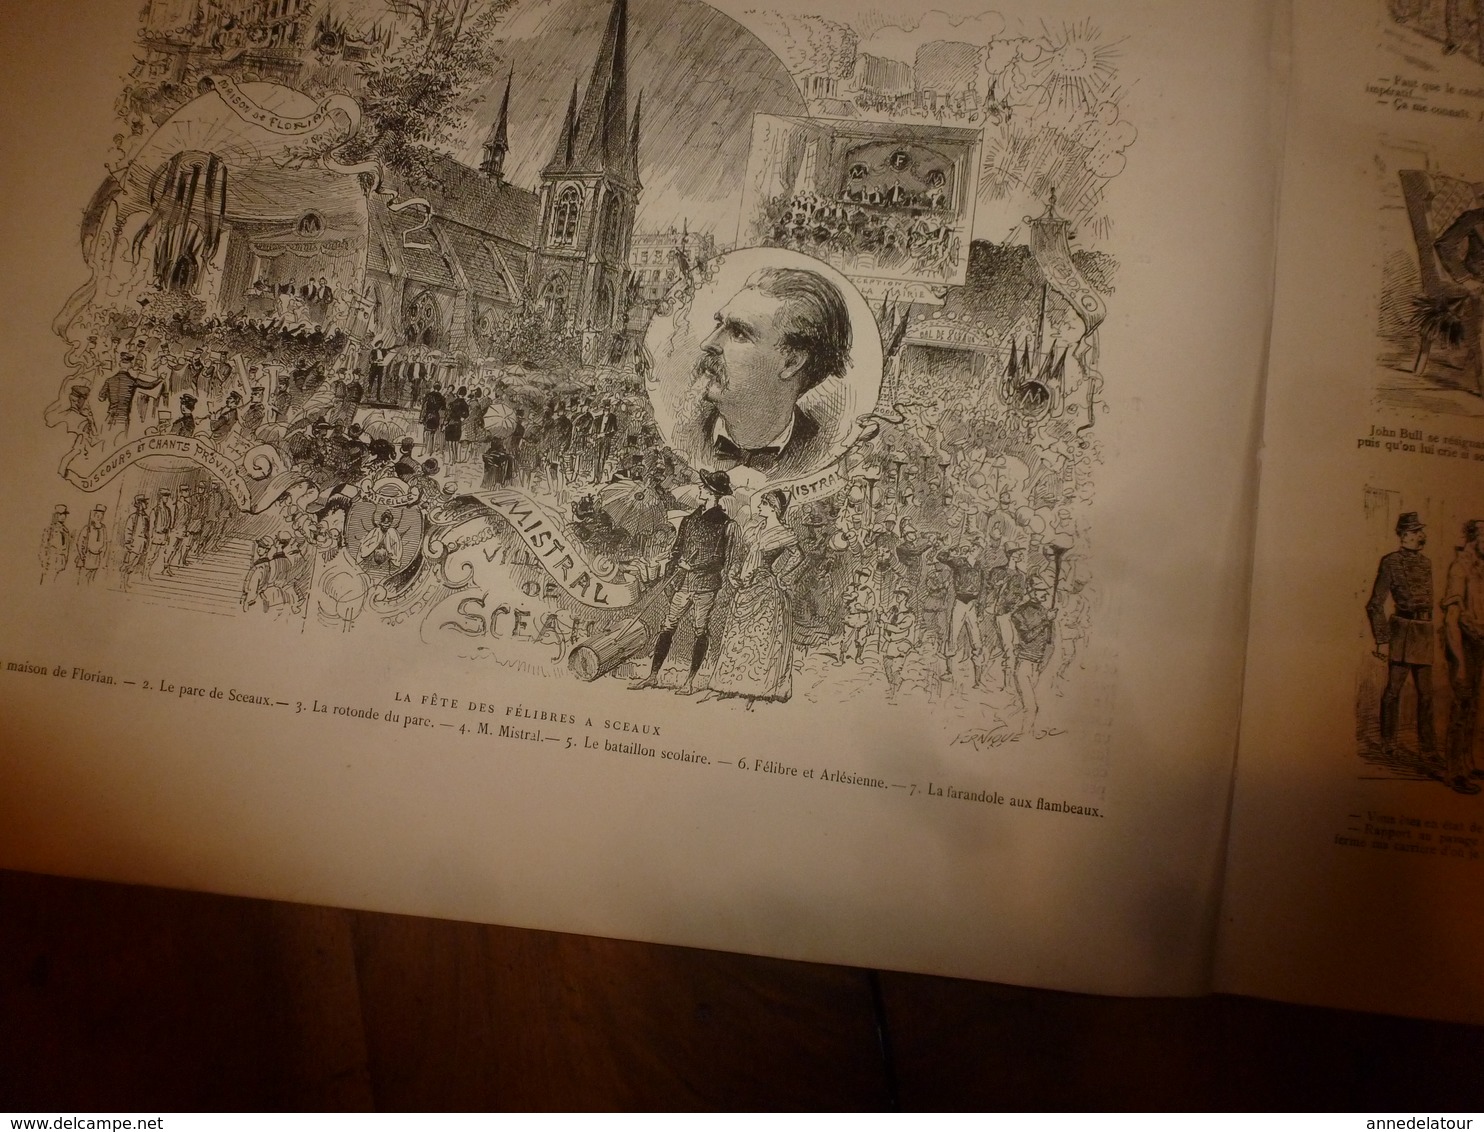 1884 L'ILLUSTRATION: Pasteur et la rage; Place de Bruxelles;Pelesh(Roum);Expo Meissonier;Fête des félibres à Sceaux;etc